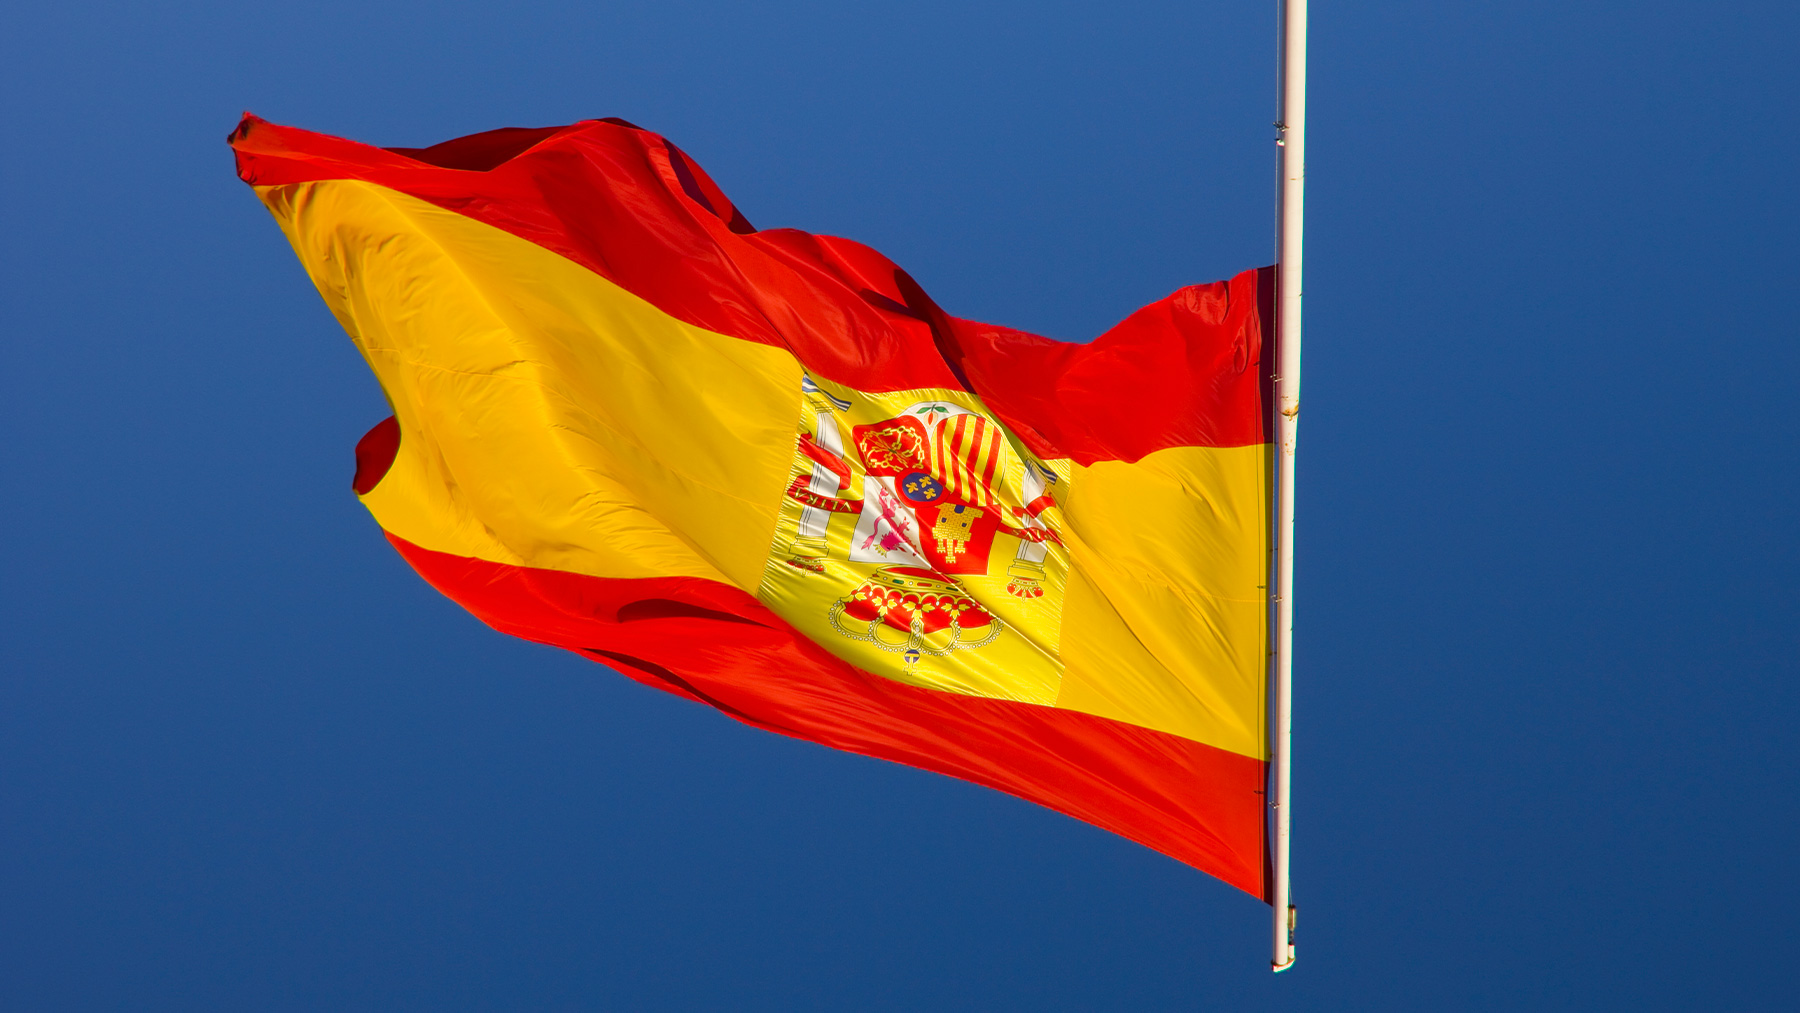 La bandera de España boca abajo.